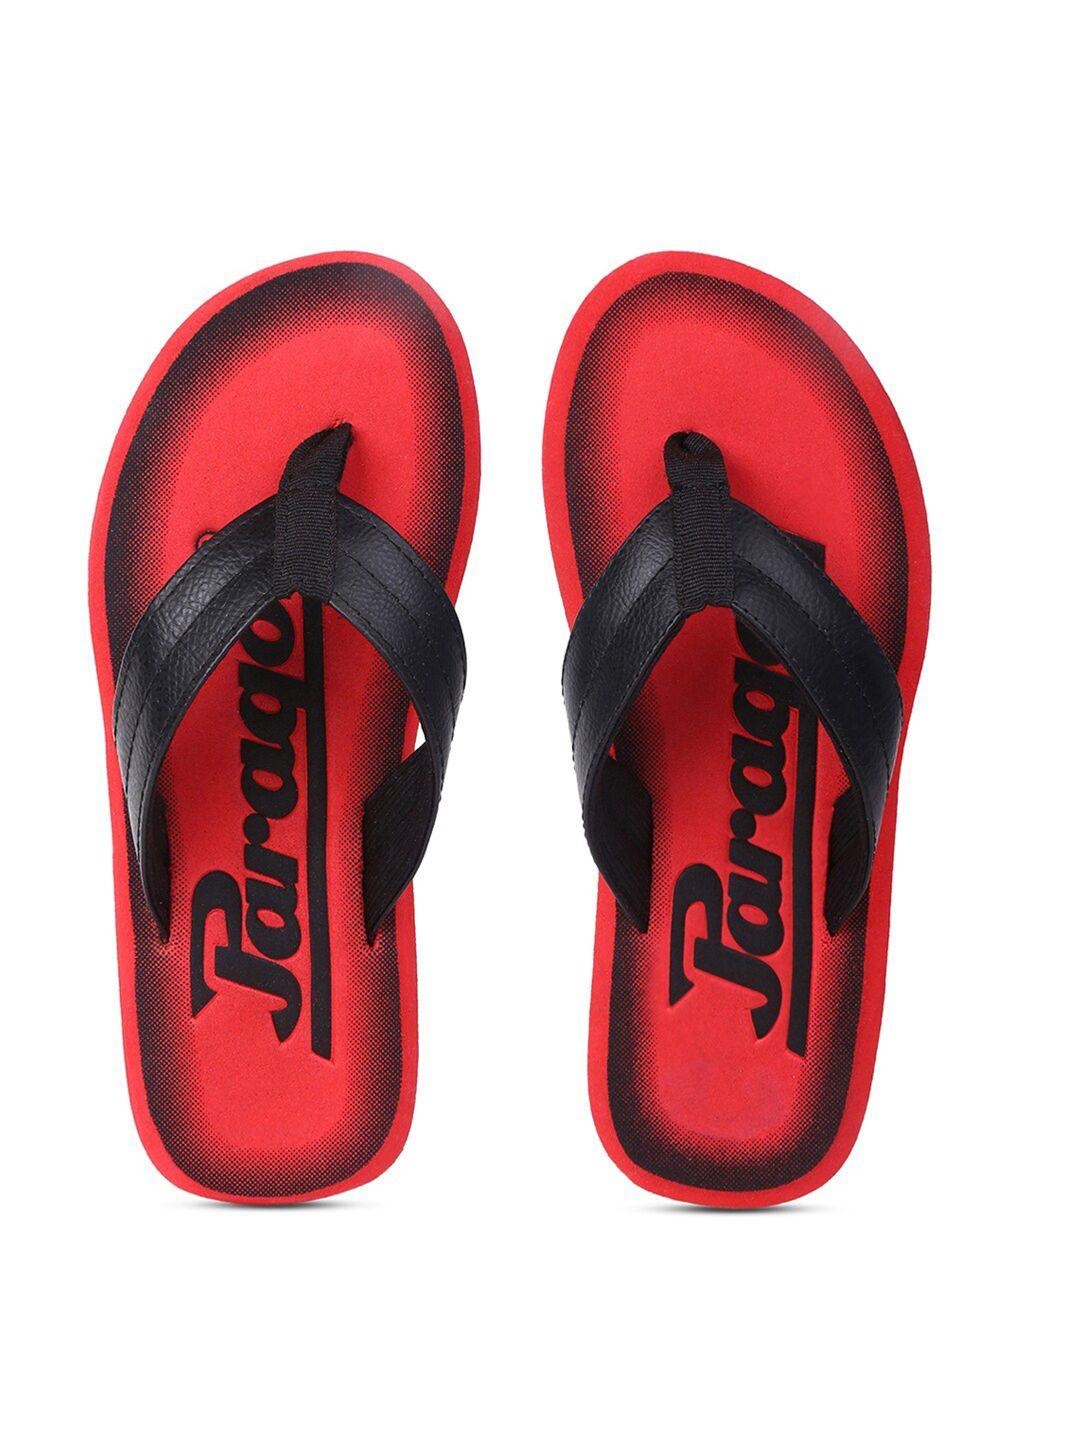 paragon-men-black-&-red-printed-thong-flip-flops